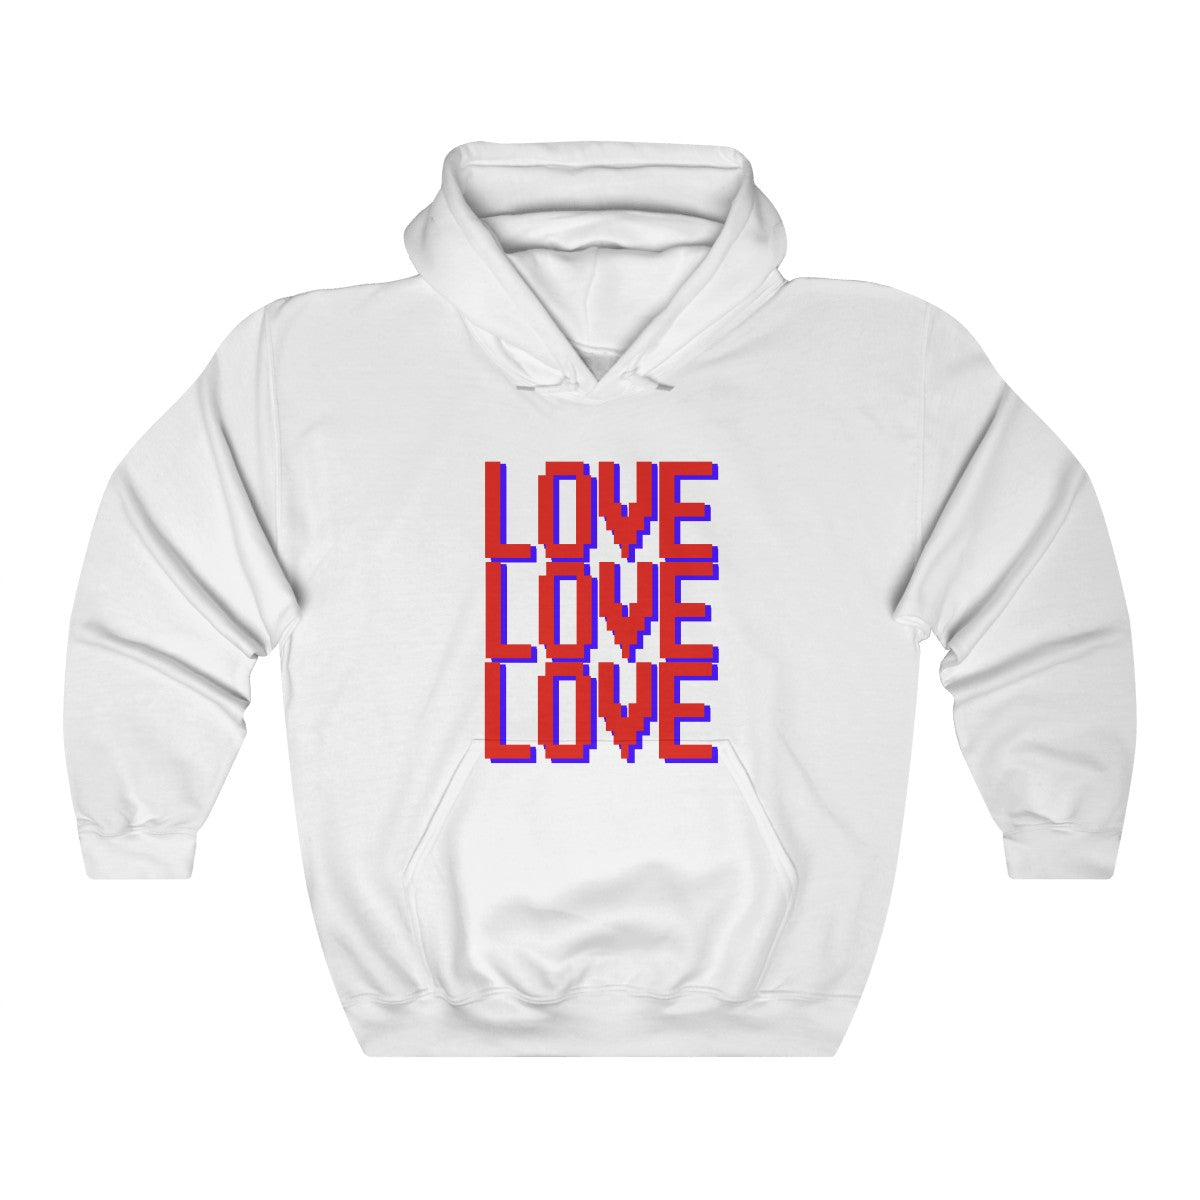 LOVE LOVE LOVE hoodie